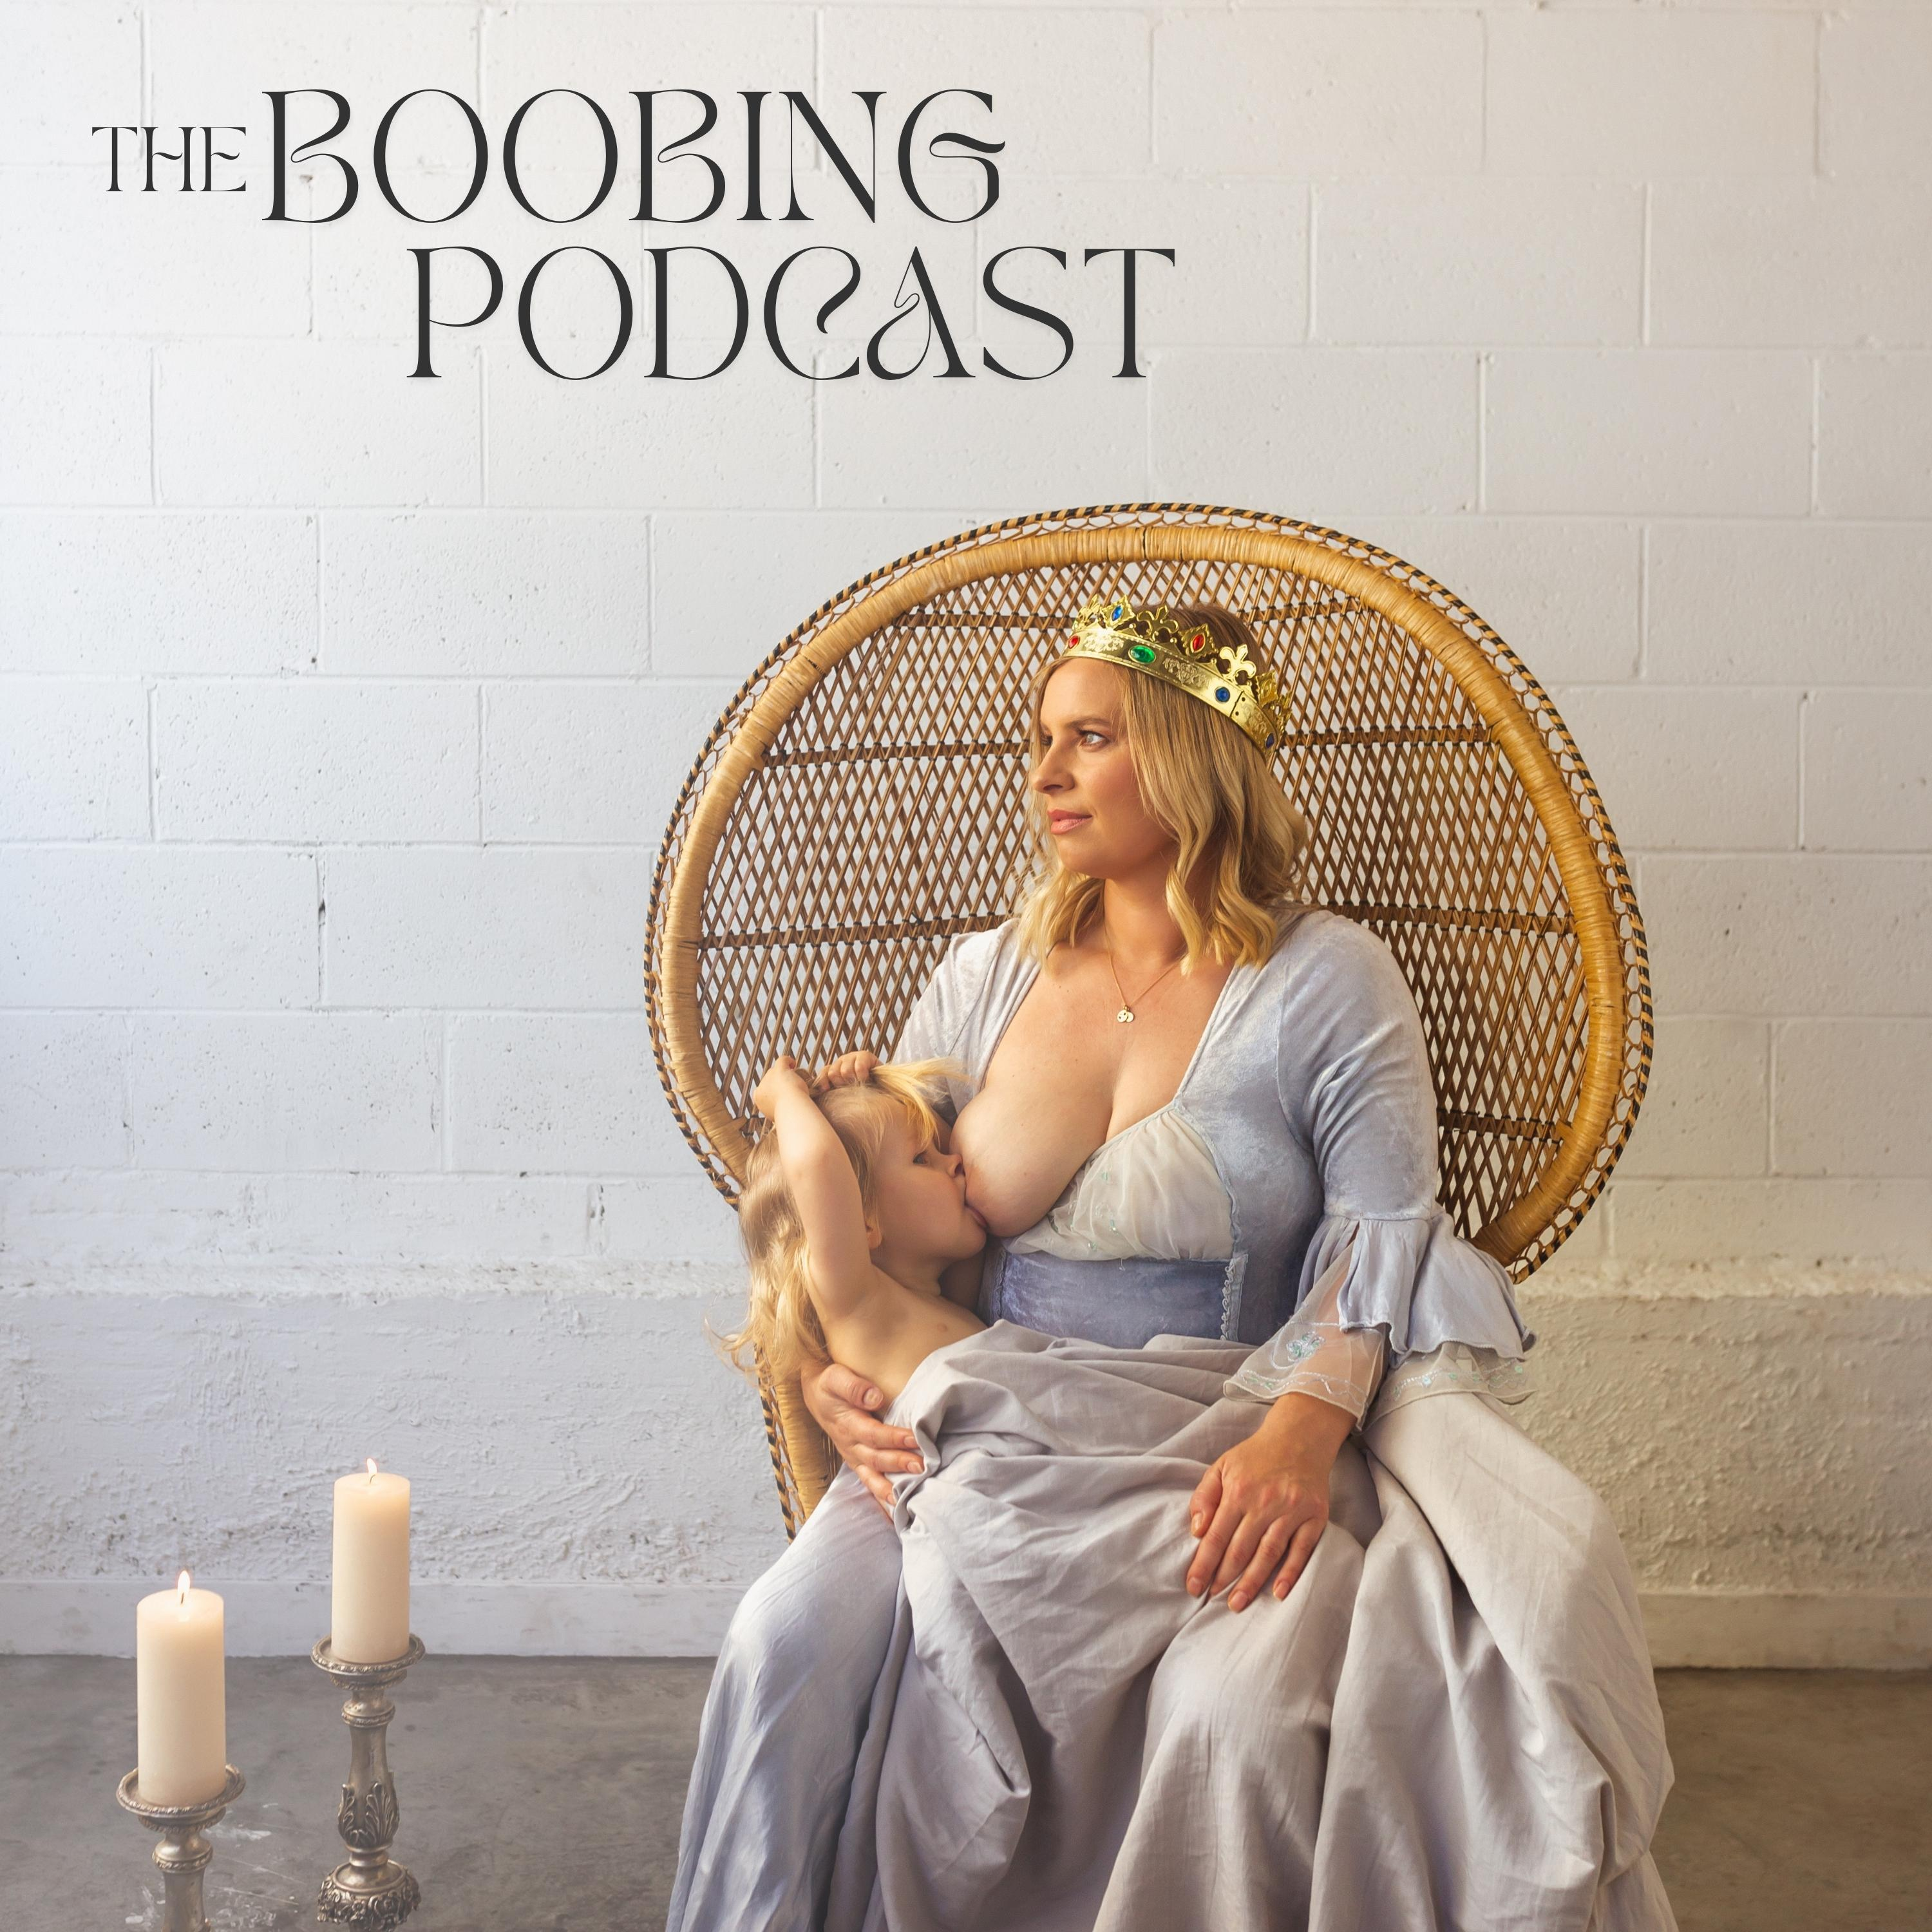 The Boobing Podcast - Episode 3 - Midwife Emma Ireland